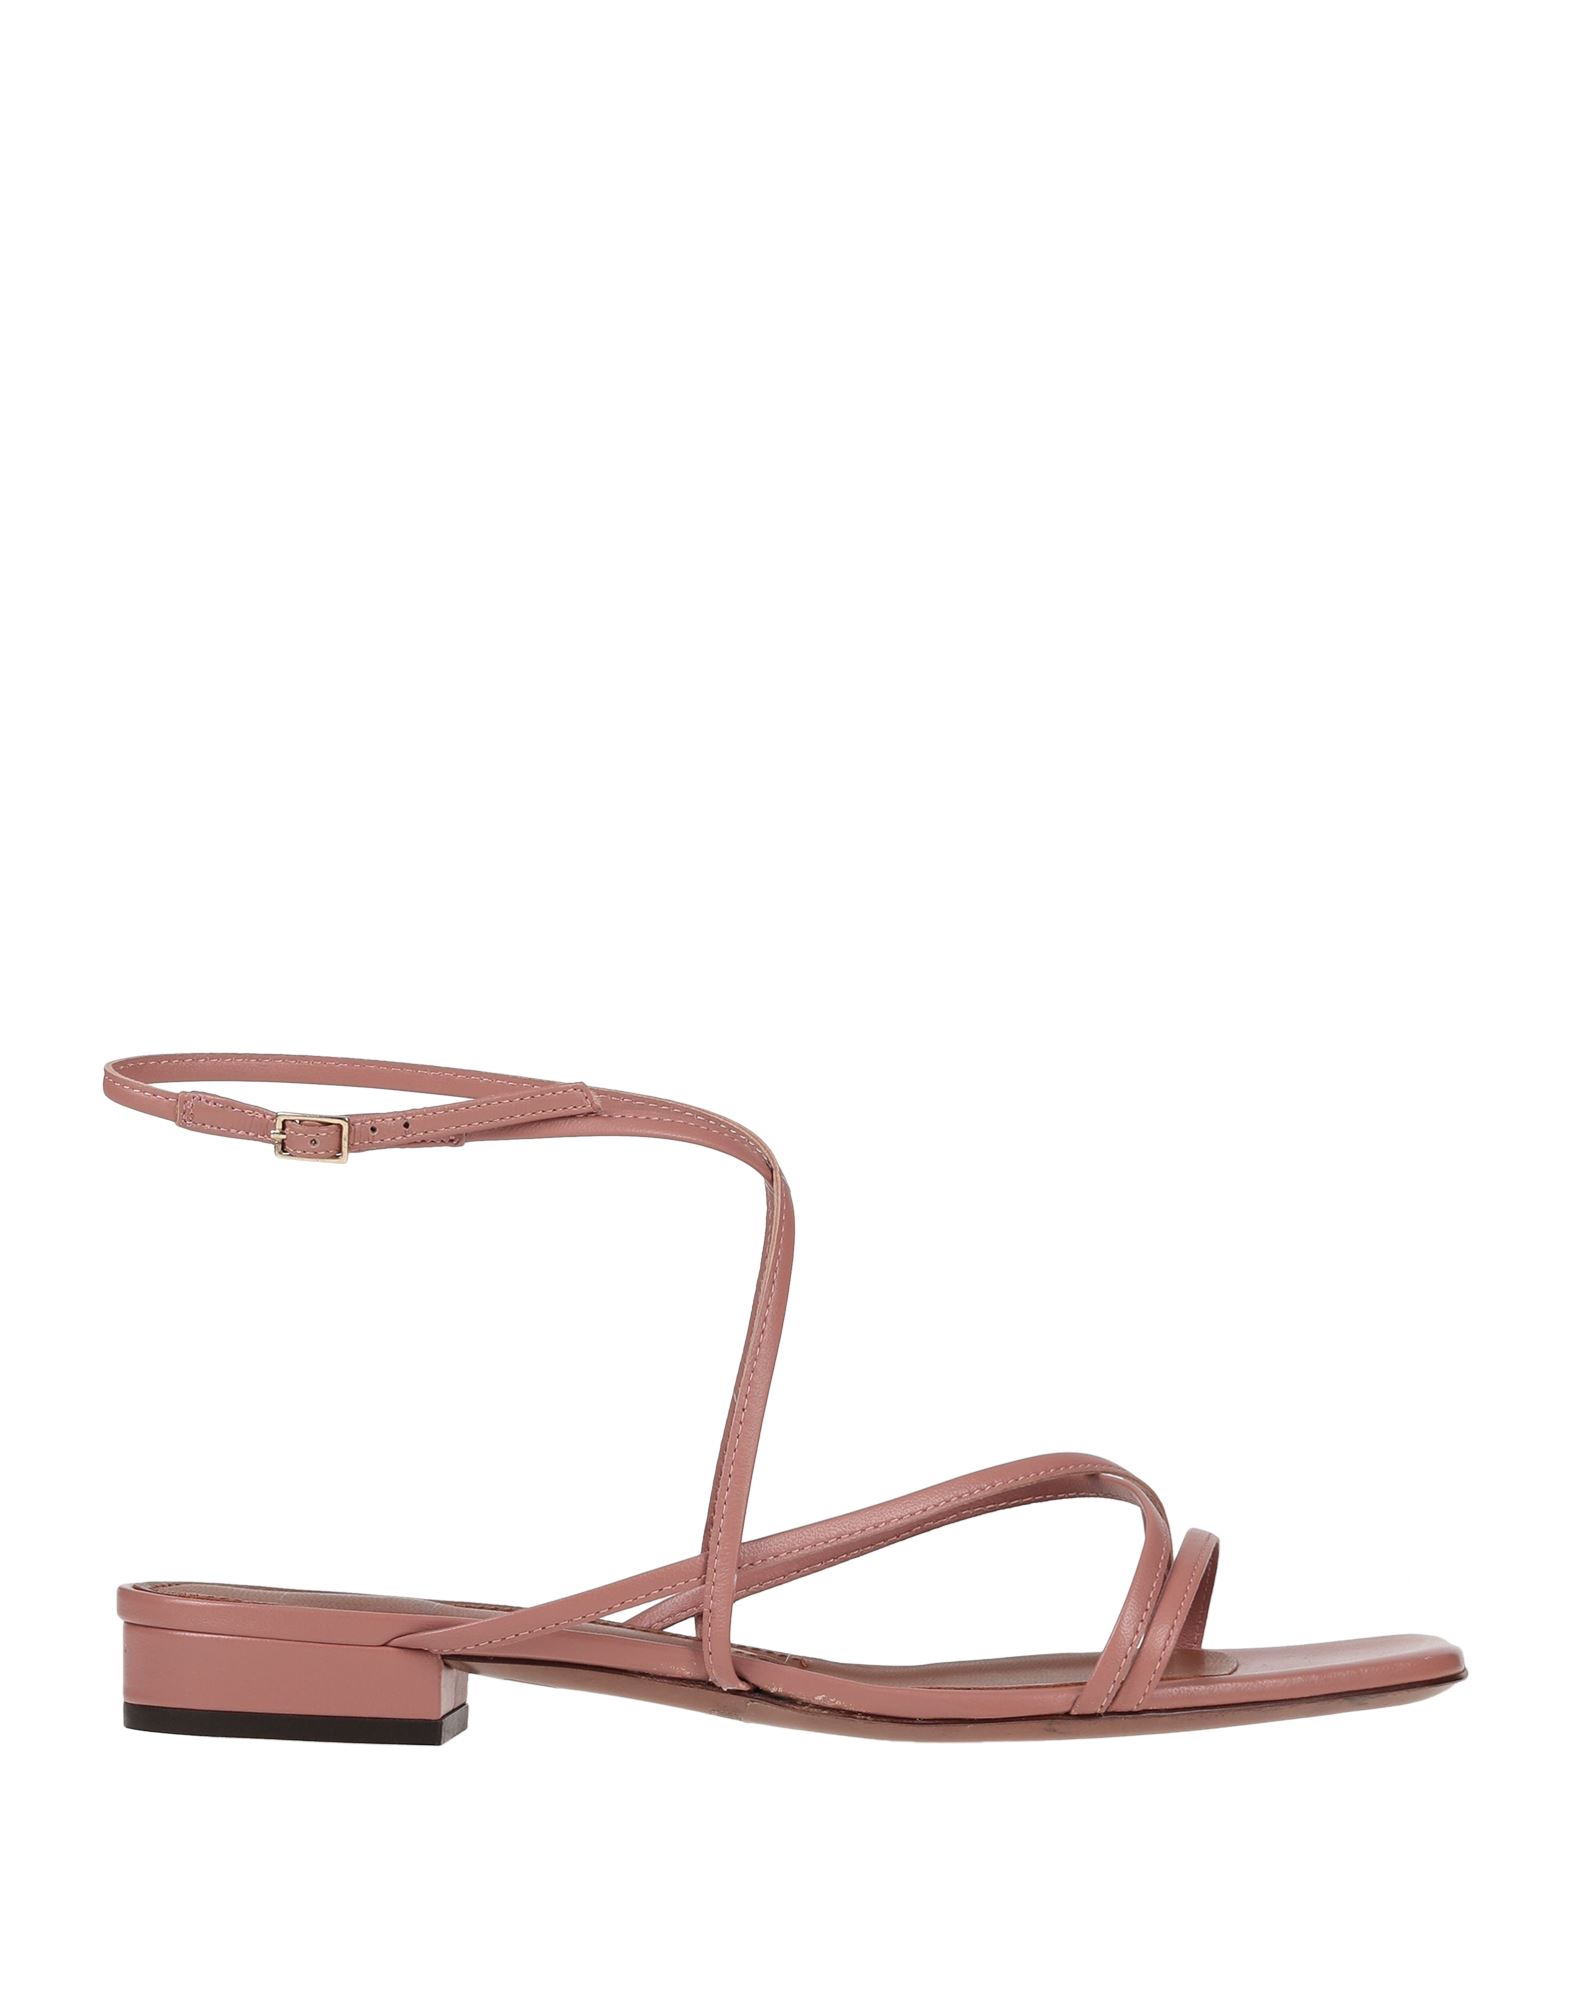 L'autre Chose L' Autre Chose Woman Sandals Pastel Pink Size 8.5 Soft Leather